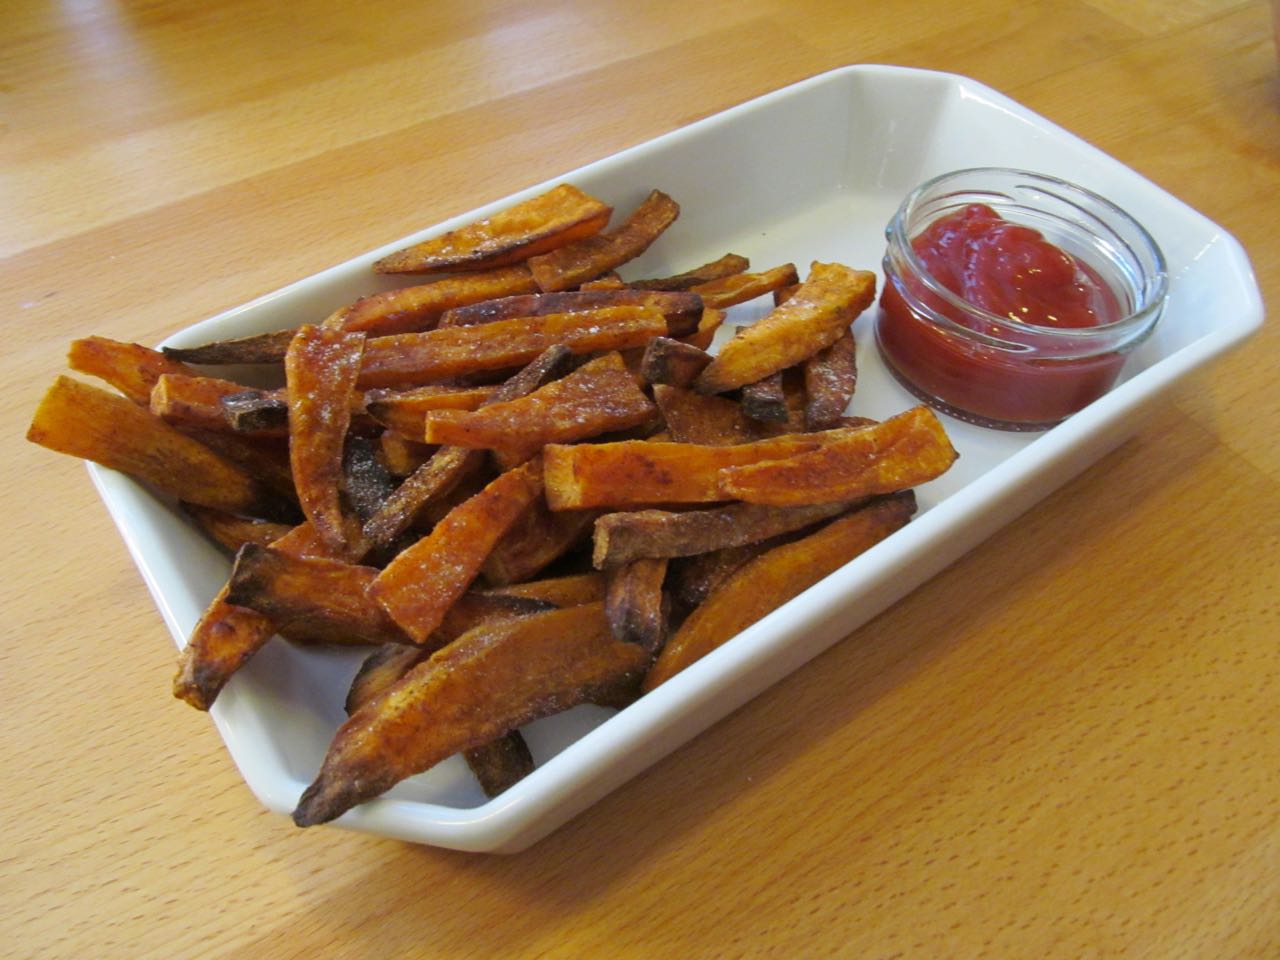 How to make sweet potato fries